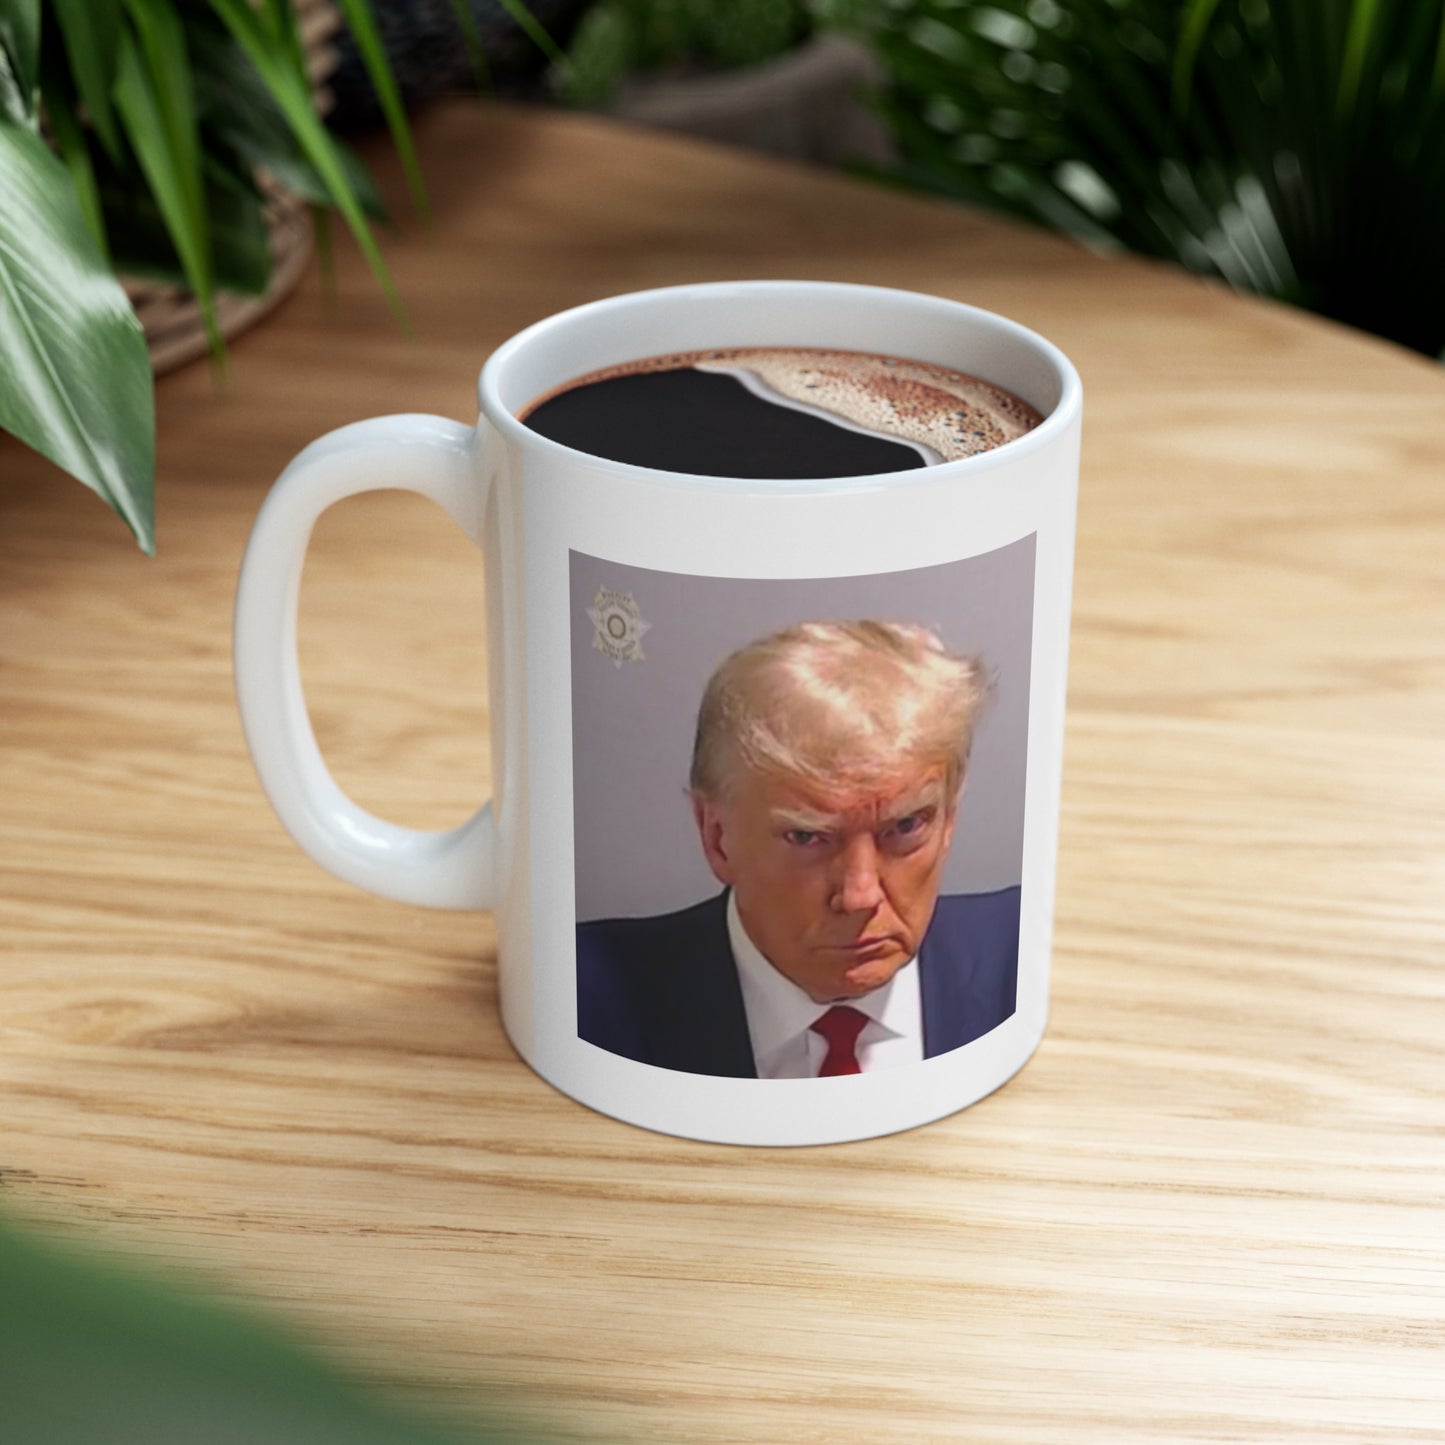 Trump Mugshot Mug